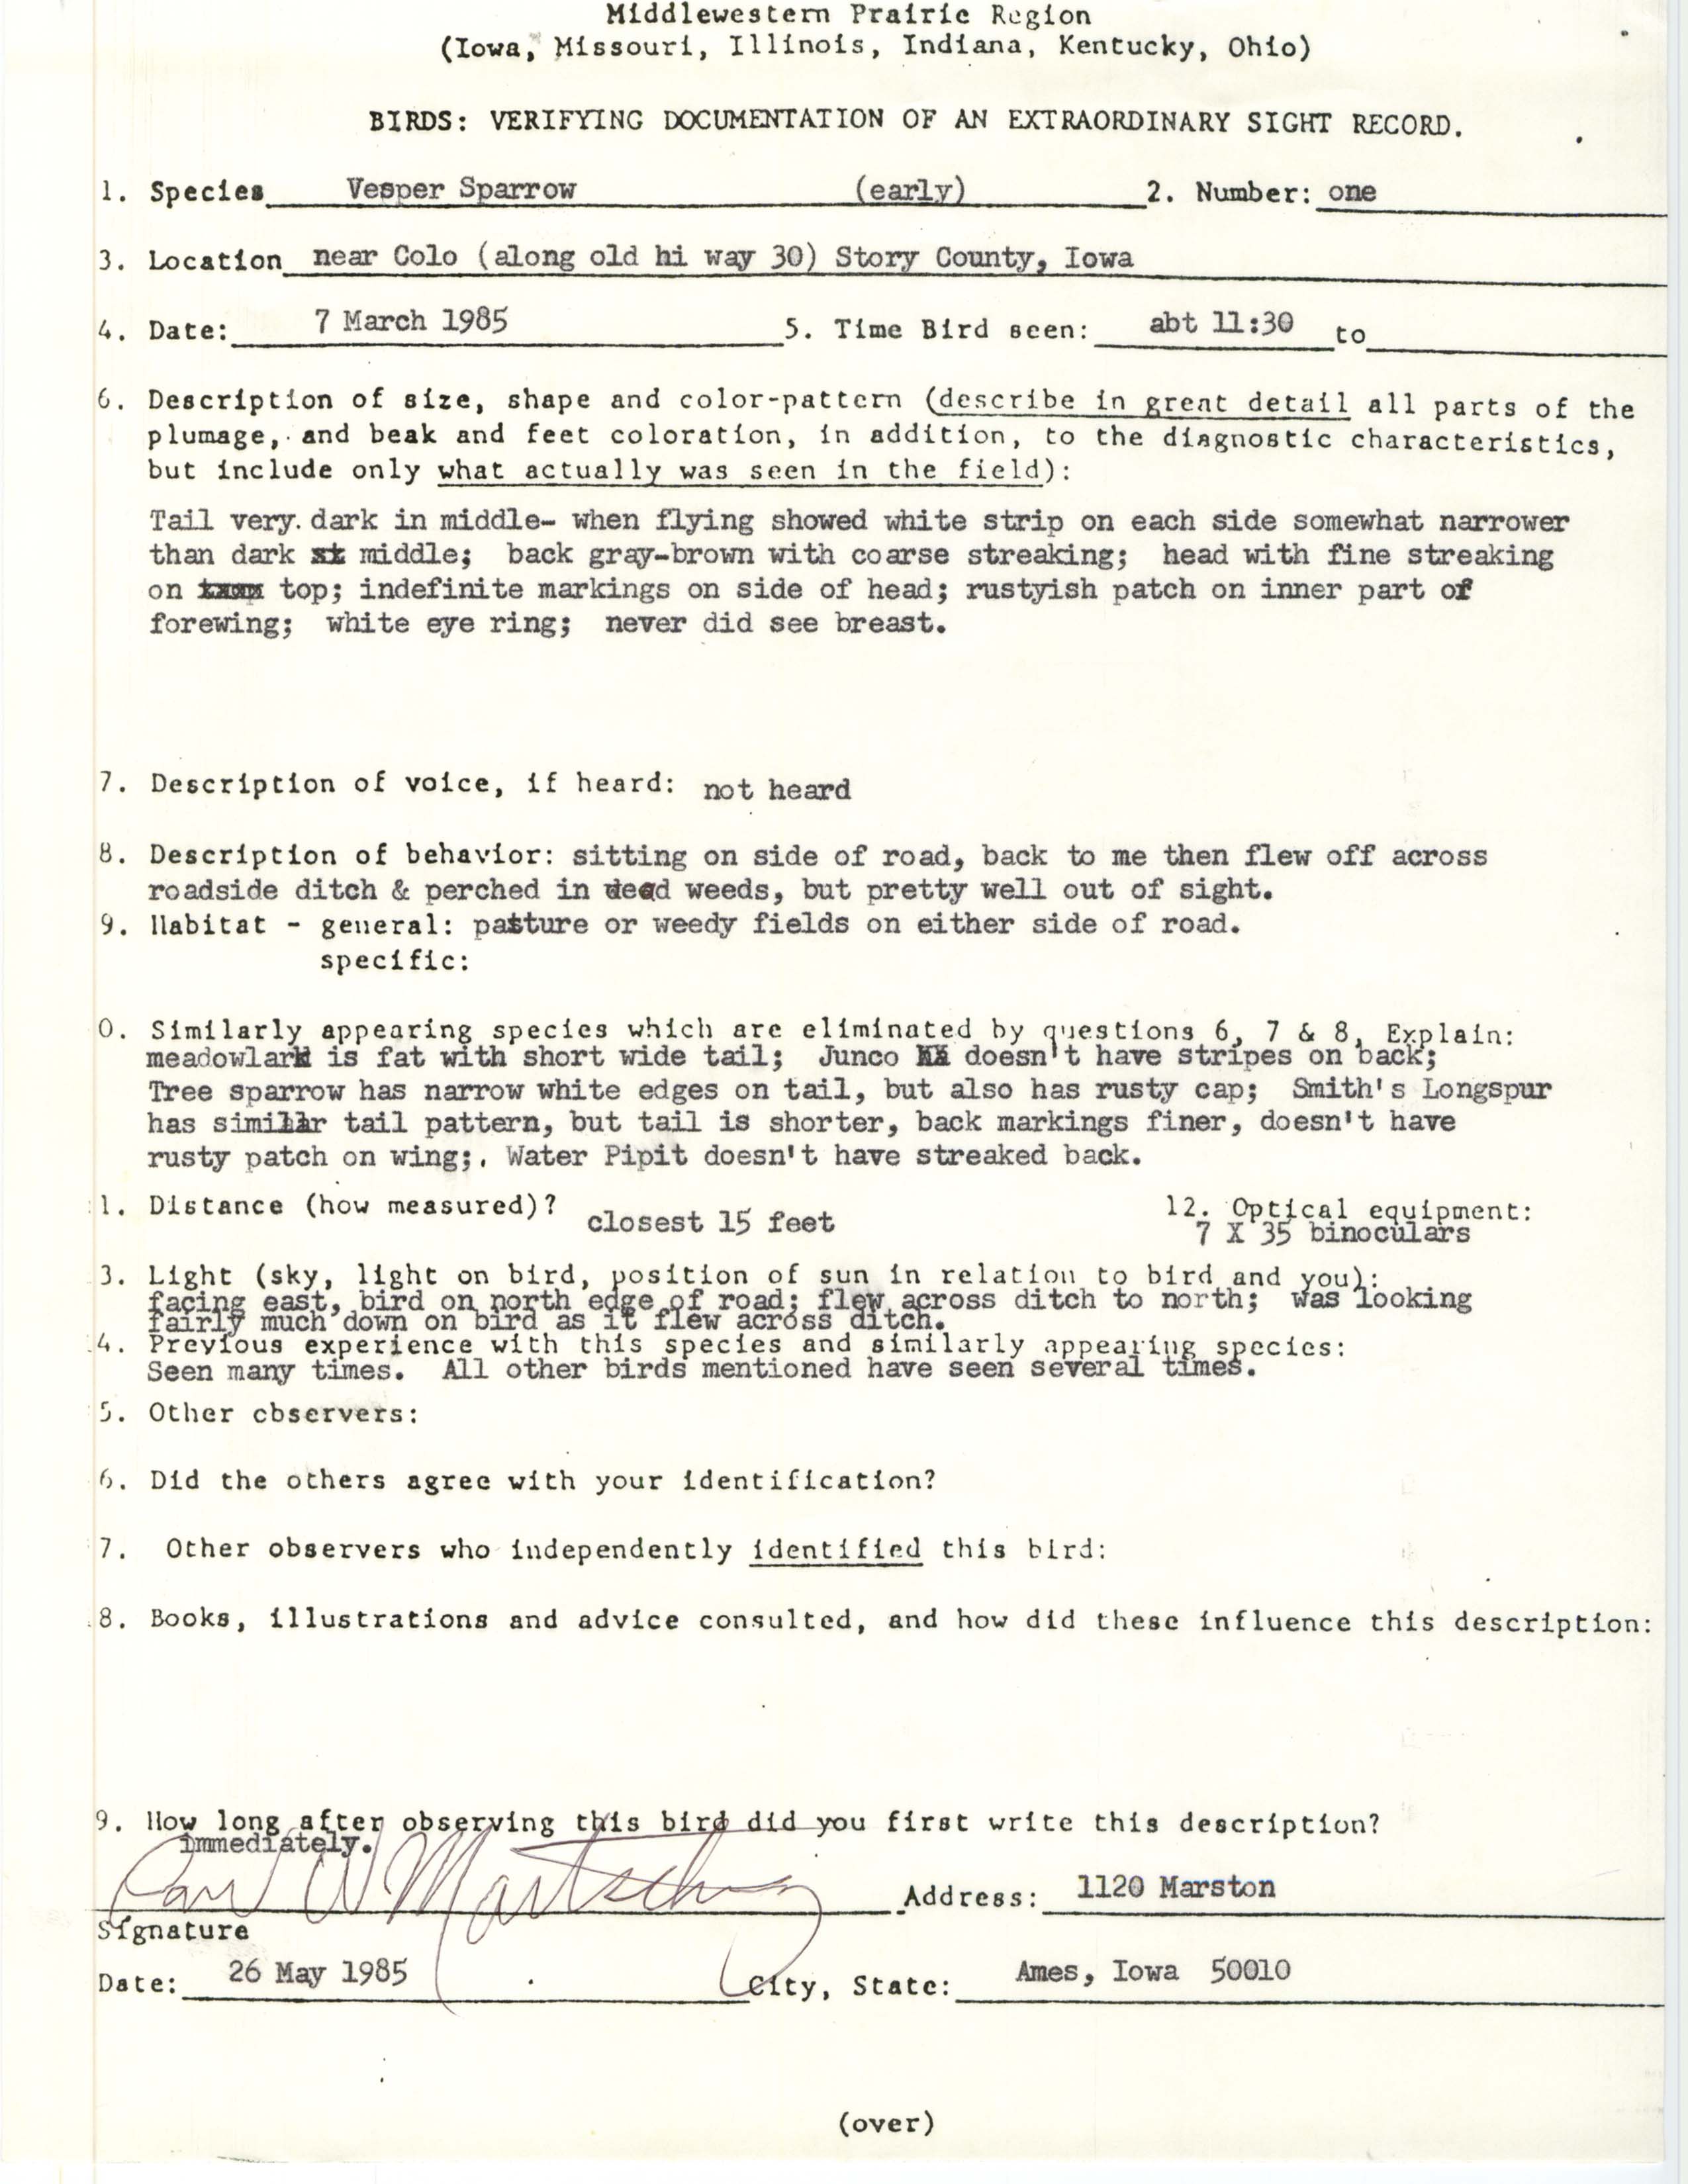 Rare bird documentation form for Vesper Sparrow near Colo, 1985